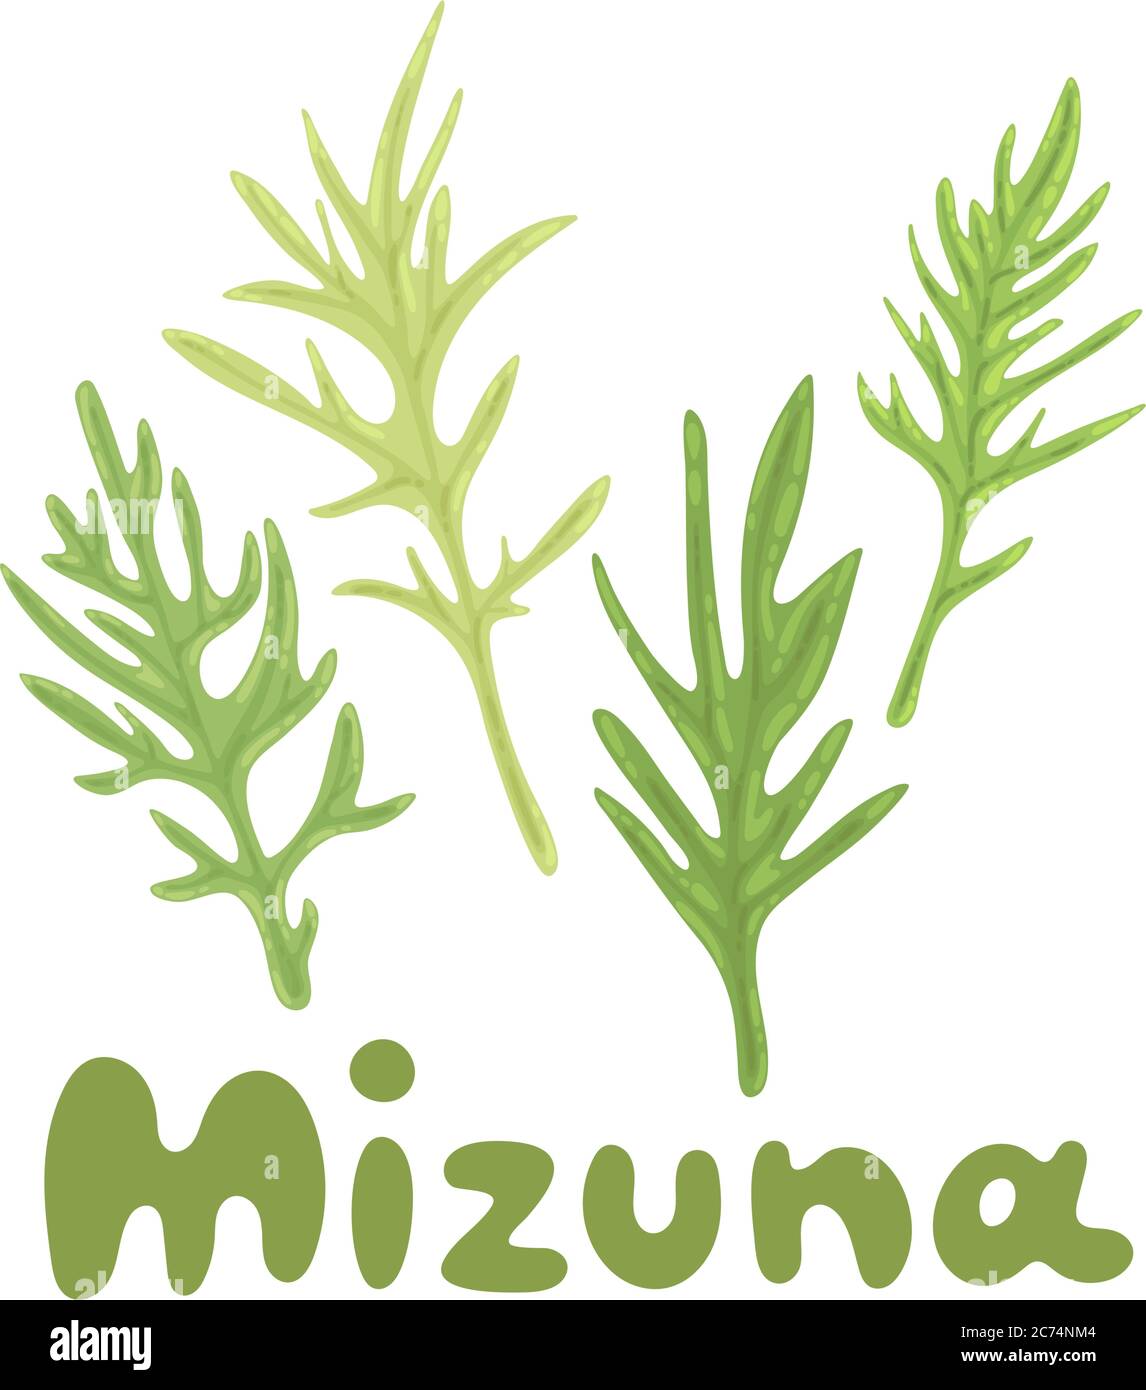 Mizuna. Les verts japonais ou la moutarde d'araignée. Plante cultivée. Cliquez sur un titre dessiné à la main. L'illustration d'herbes Kyona est parfaite pour cuisiner Illustration de Vecteur